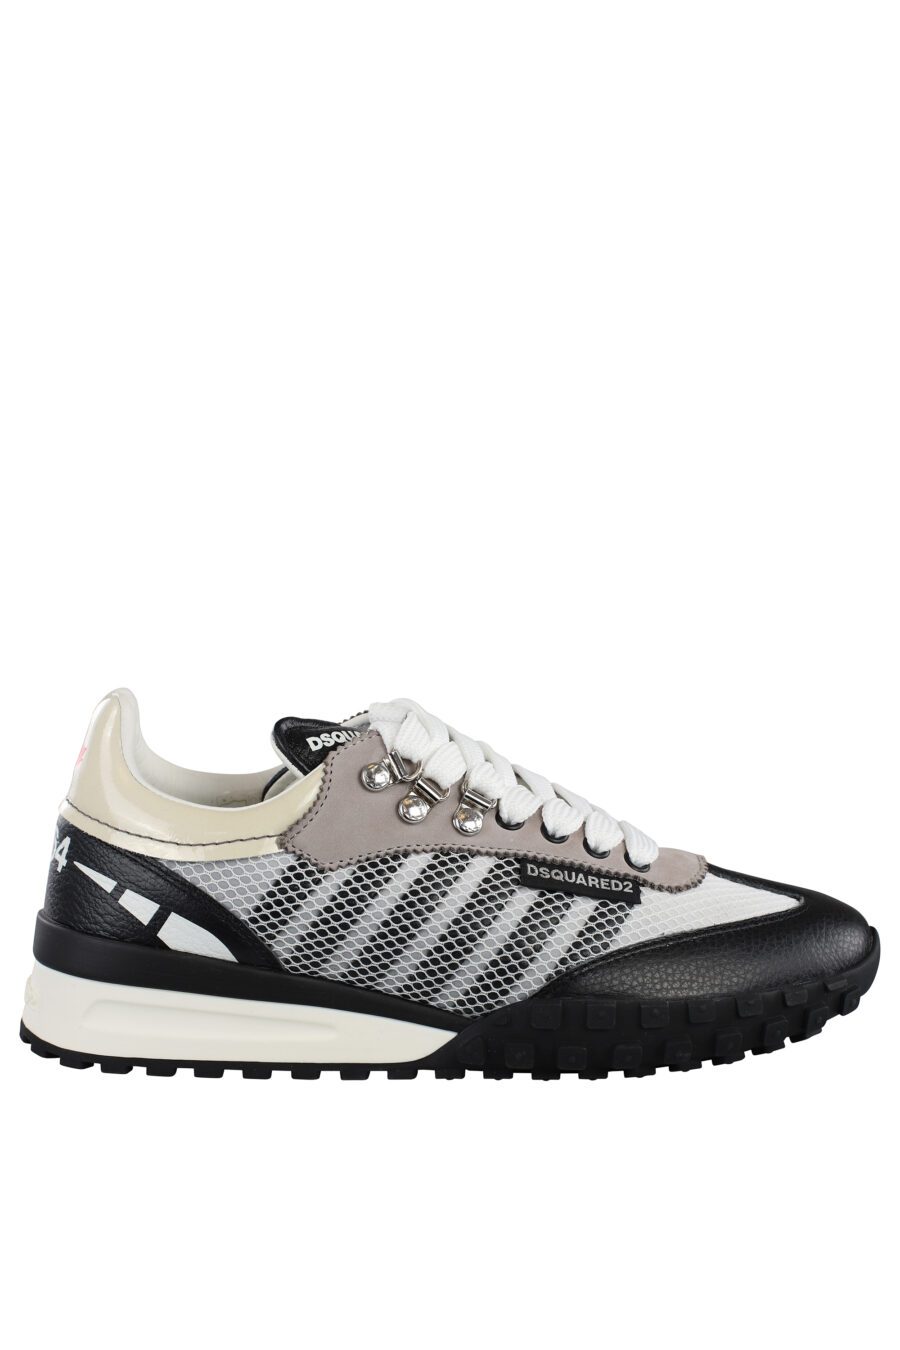 Zapatillas blancas y grises con lineas grises - IMG 7152